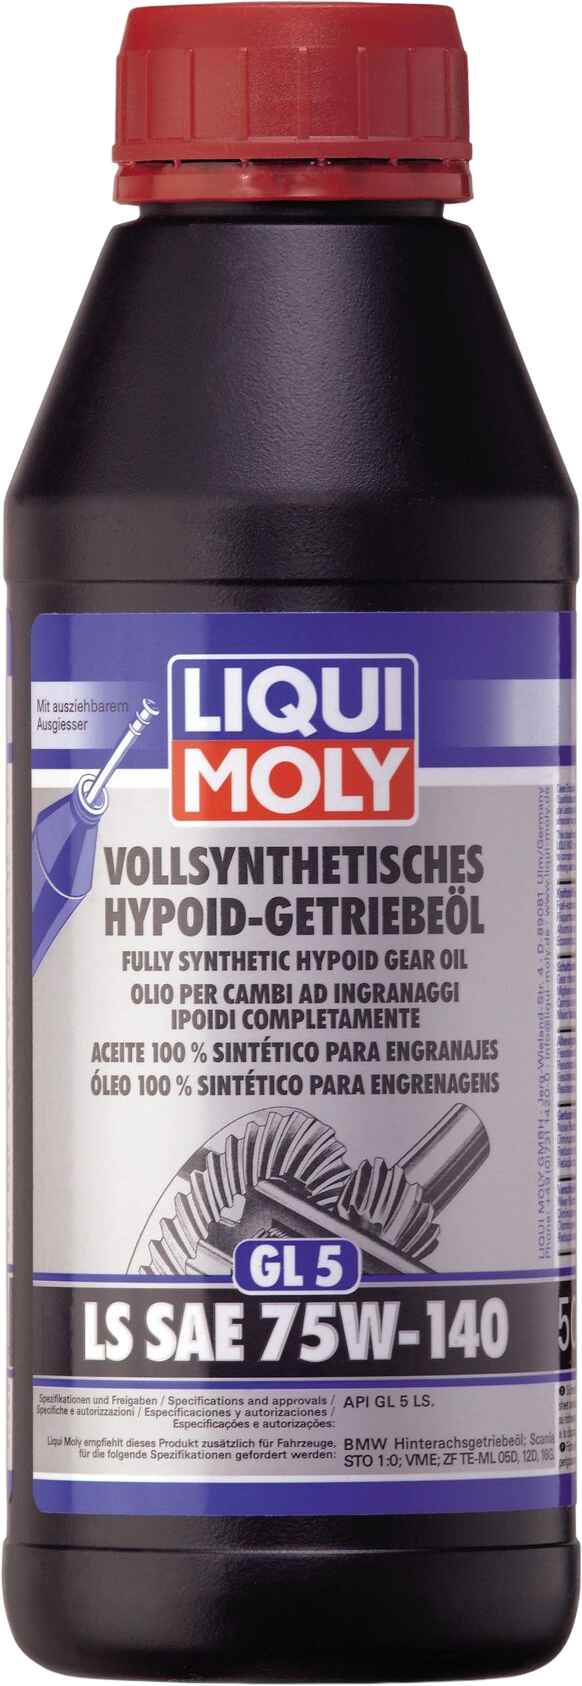 Liqui Moly Volsynthetische Hypoïdtransmissieolie (GL5) LS SAE 75W-140, 6 x 500 ml detail 2